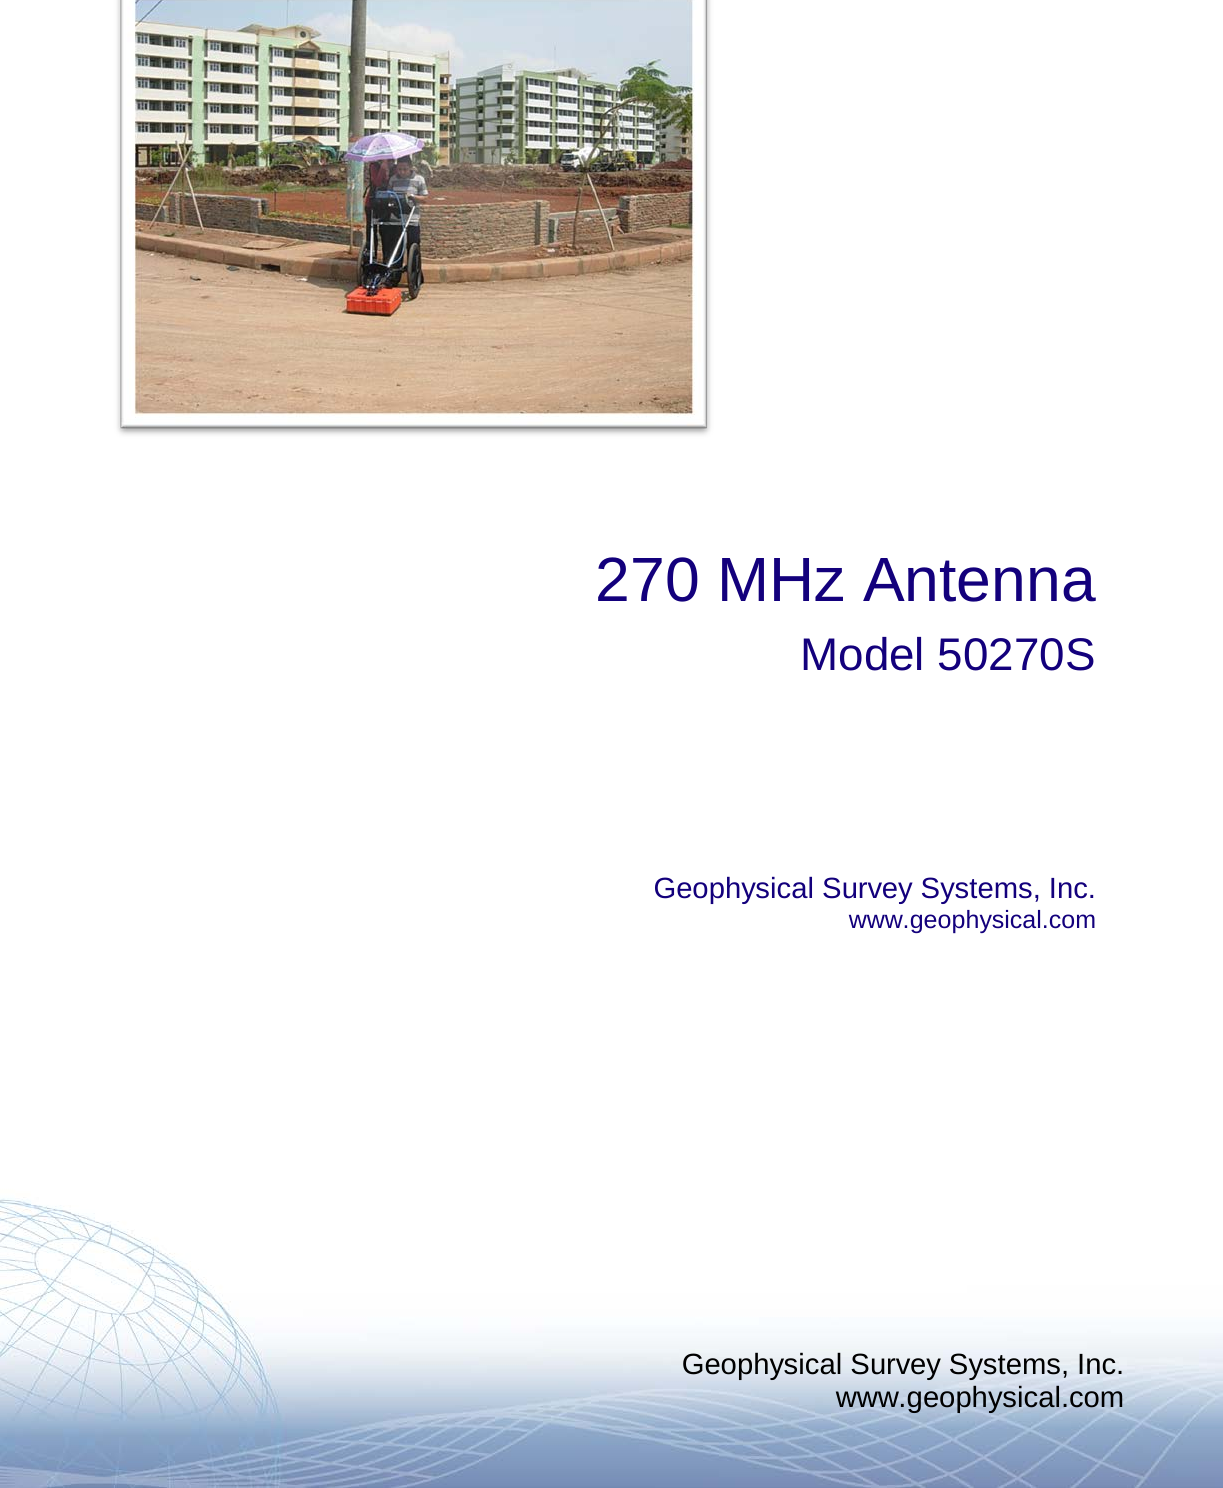 Geophysical Survey Systems, Inc. www.geophysical.com         270 MHz Antenna Model 50270S     Geophysical Survey Systems, Inc. www.geophysical.com       